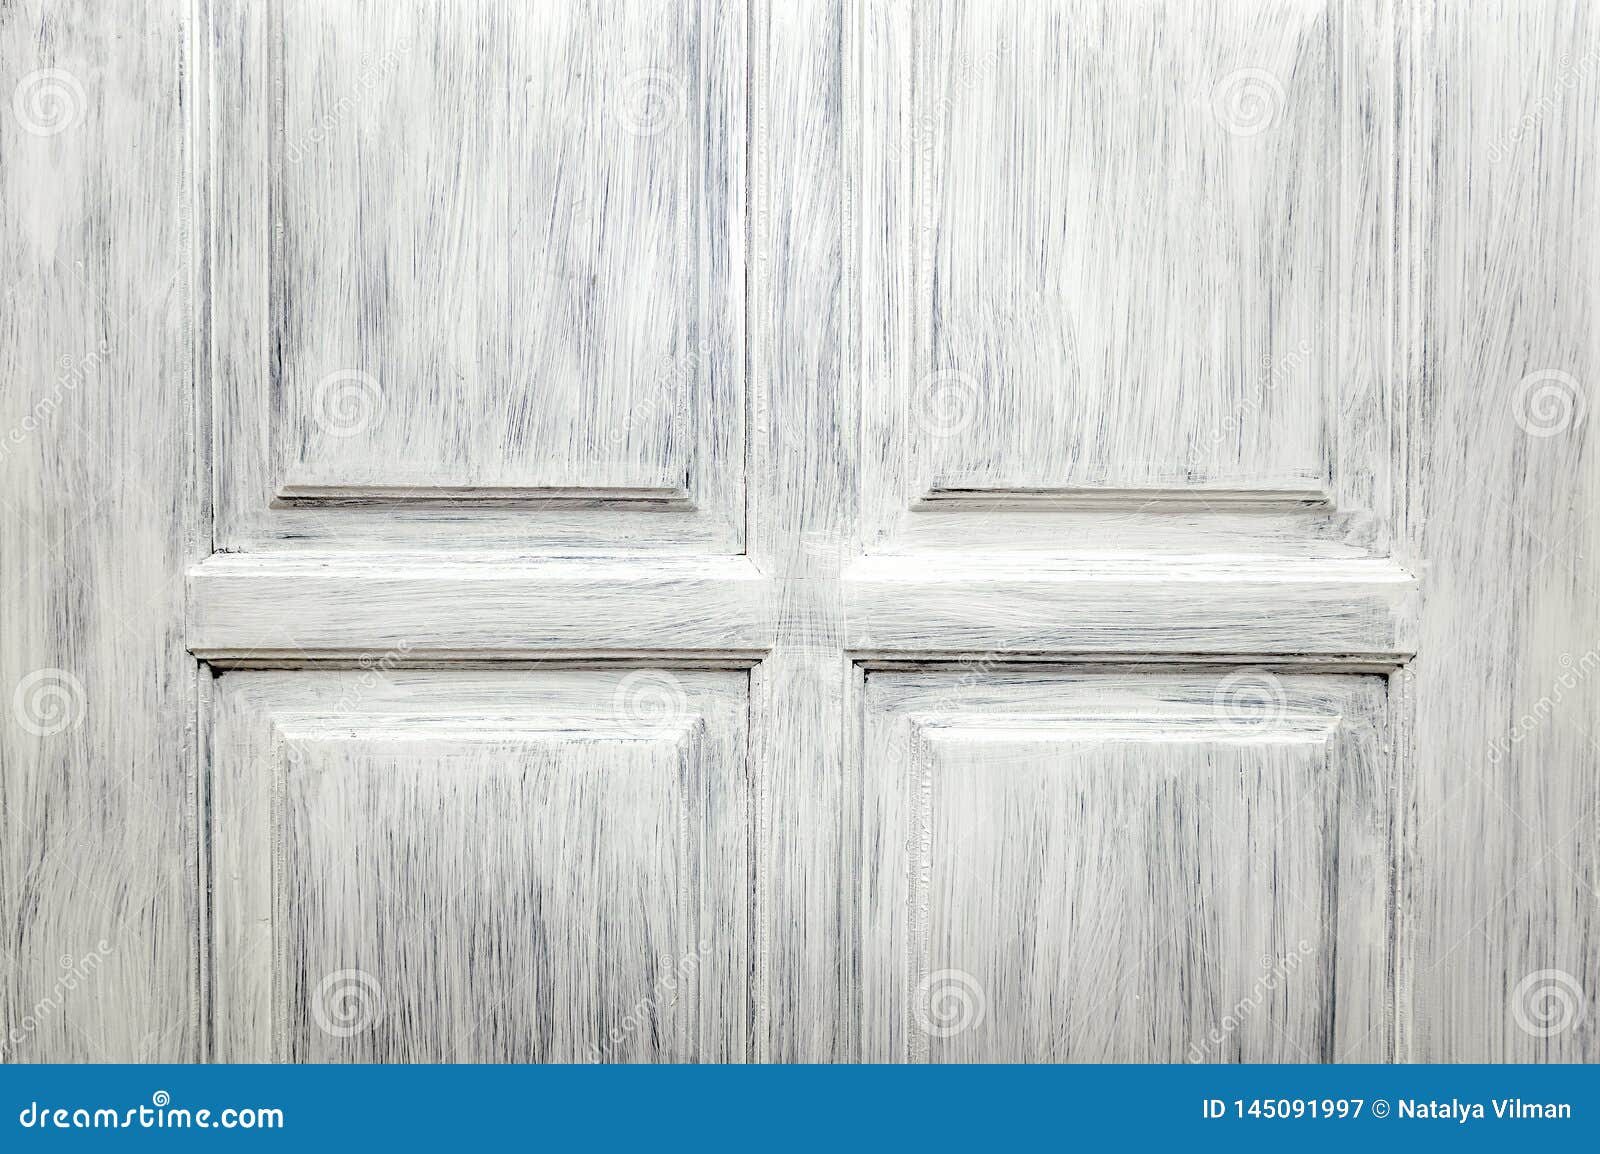 white wooden door texture